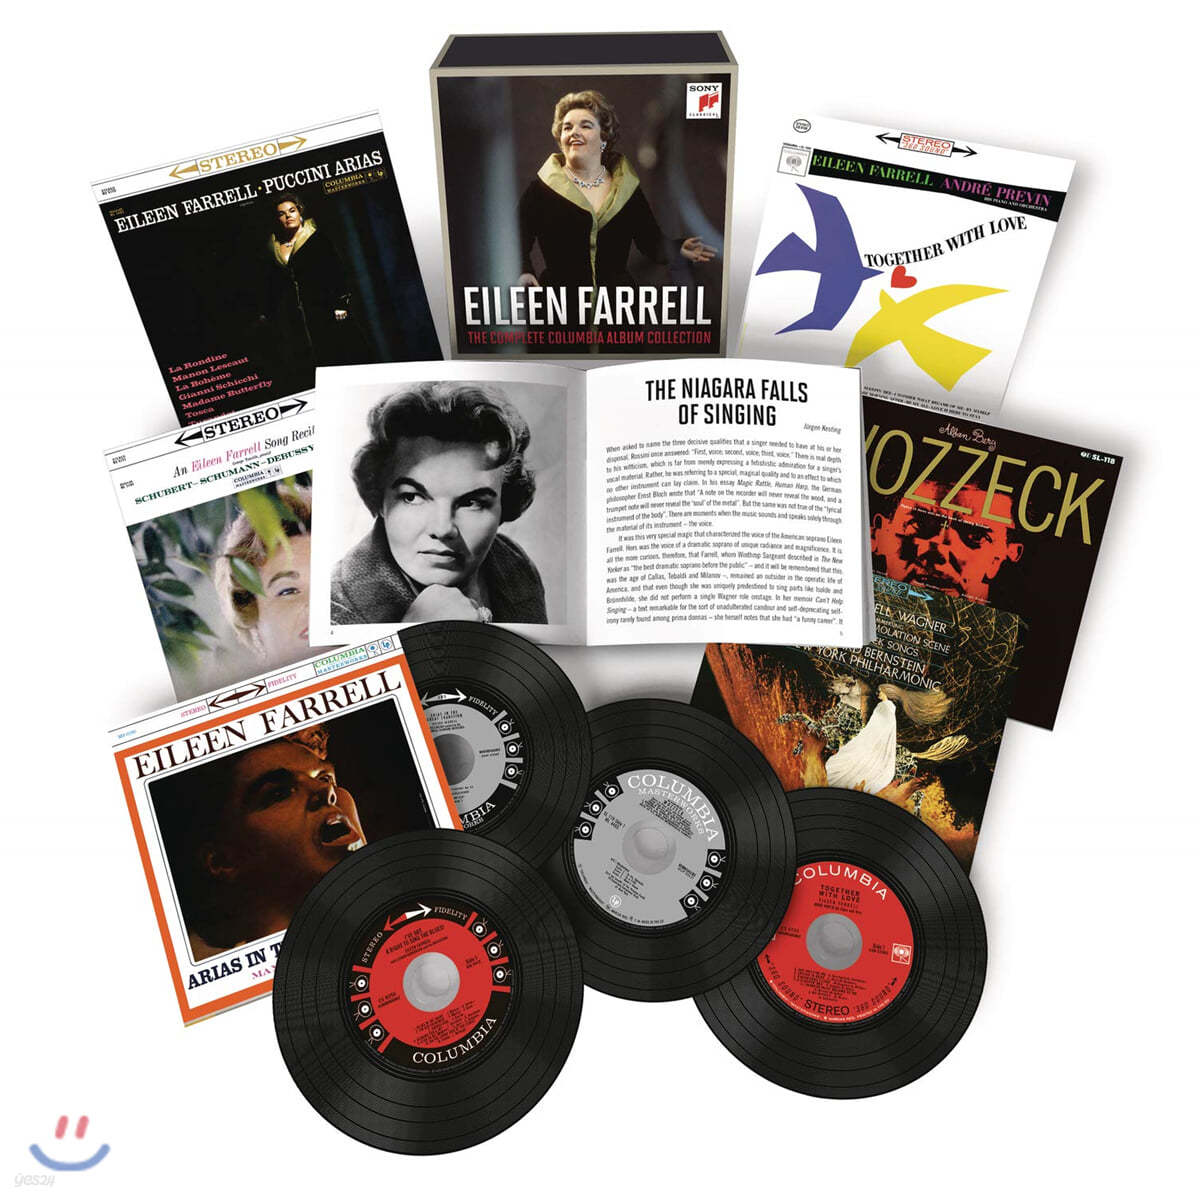 에일린 파렐 탄생 100주년 기념 콜롬비아 녹음 전집 (Eileen Farrell - The Complete Columbia Album Collection)